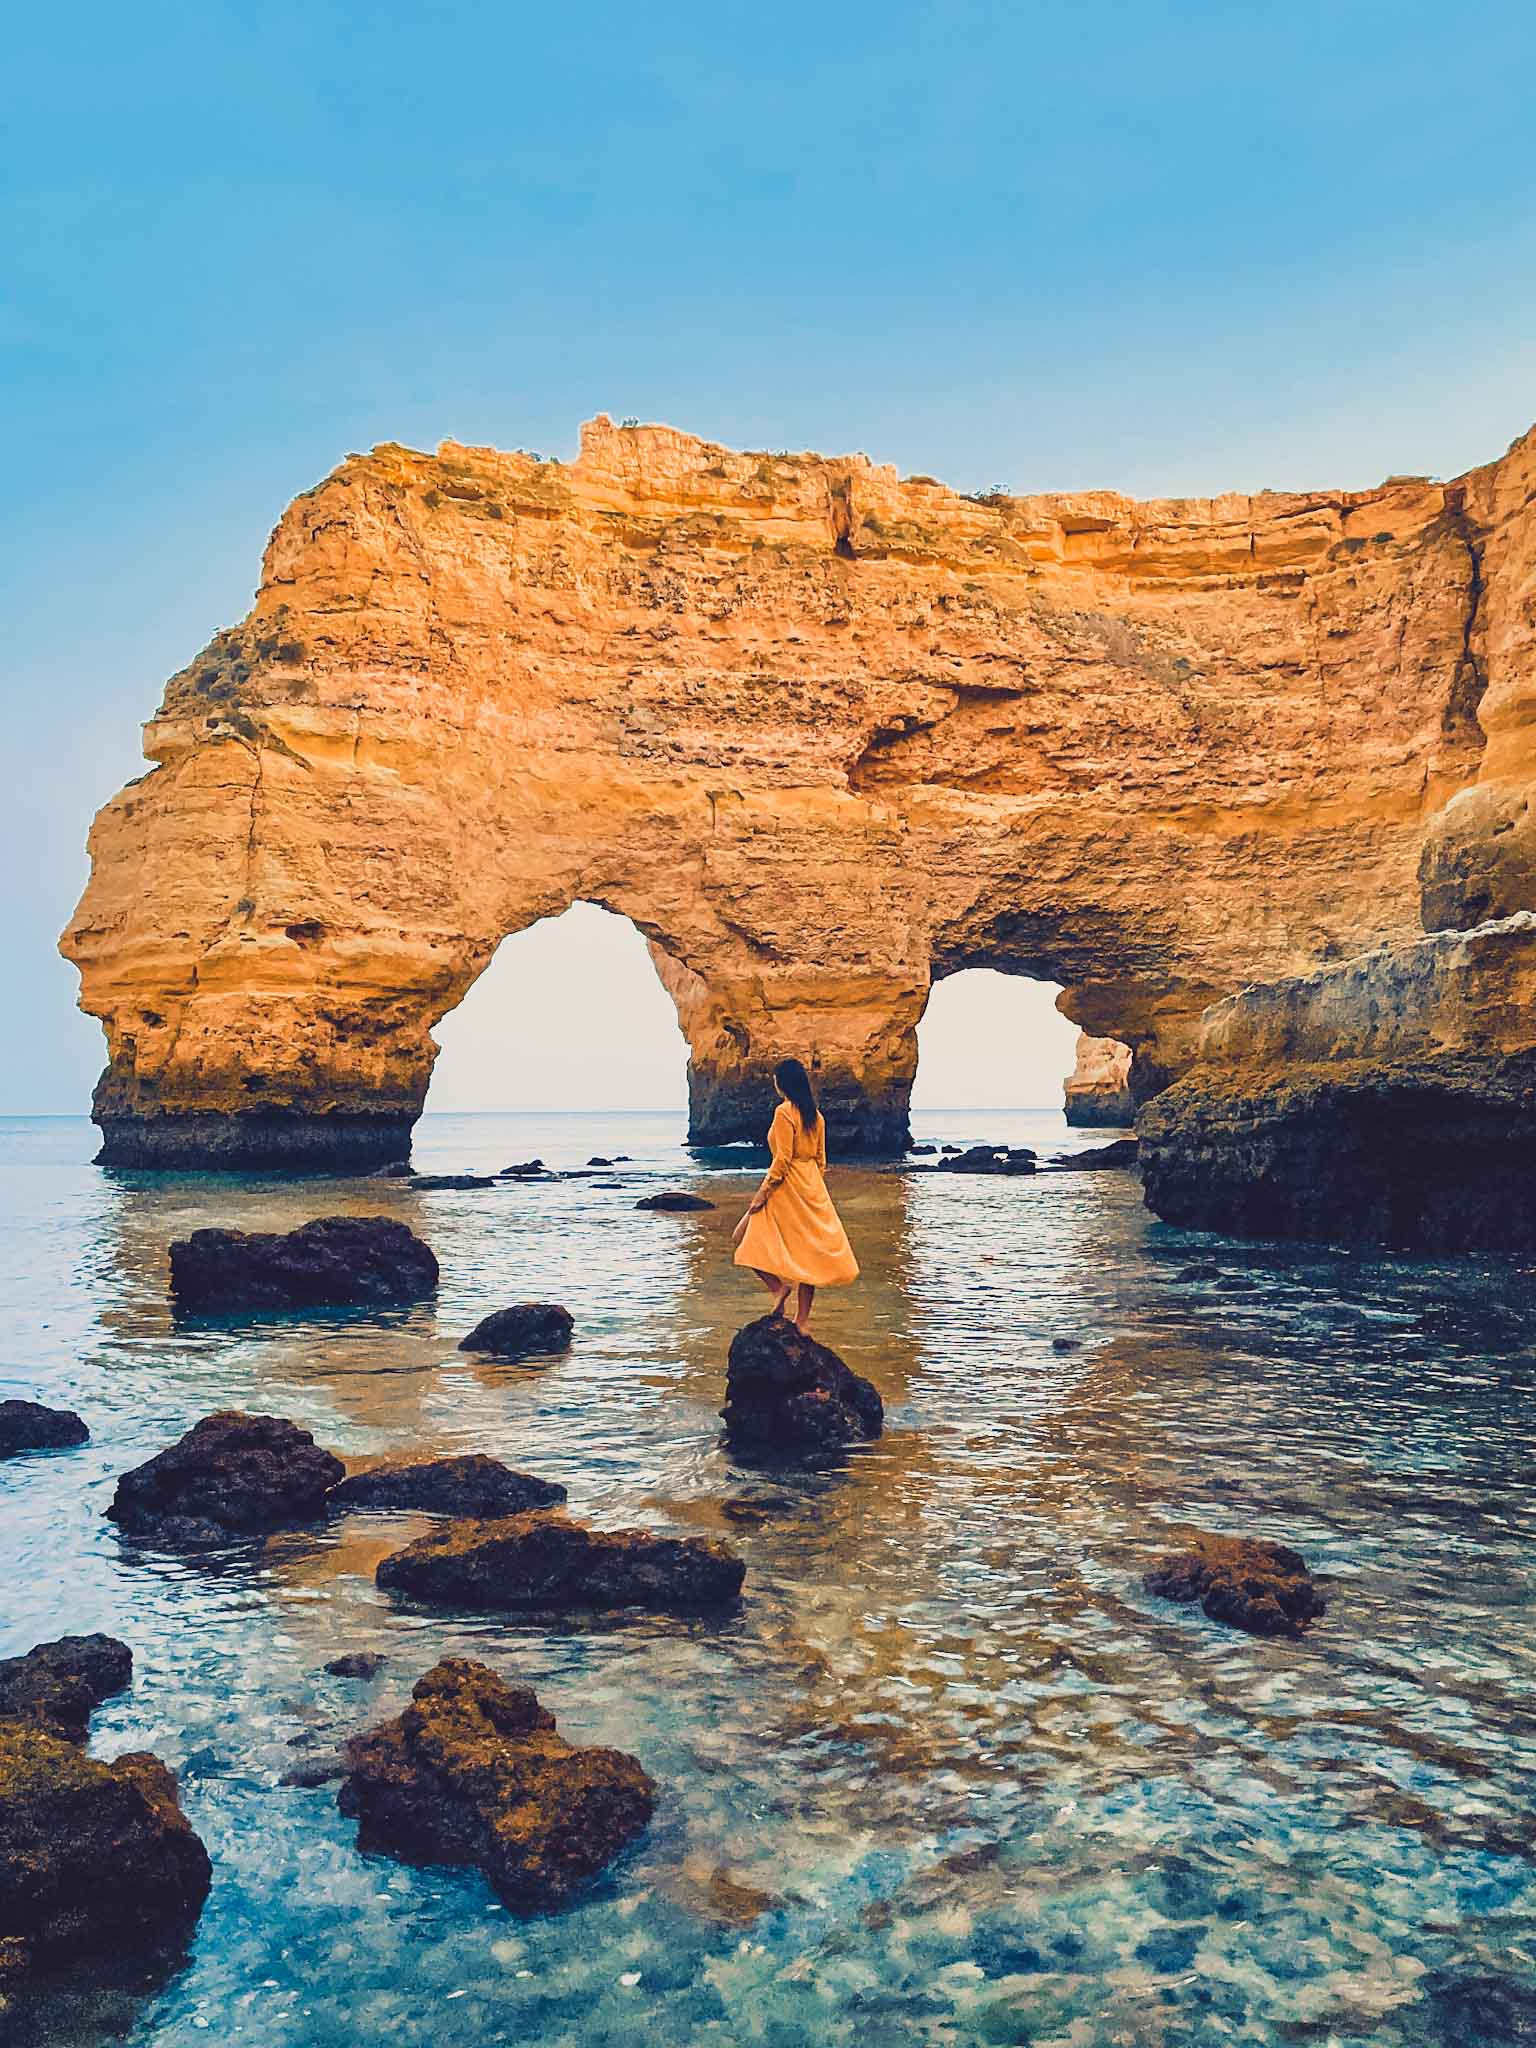 Best Instagram spots in Algarve in Portugal - Elephant Rock